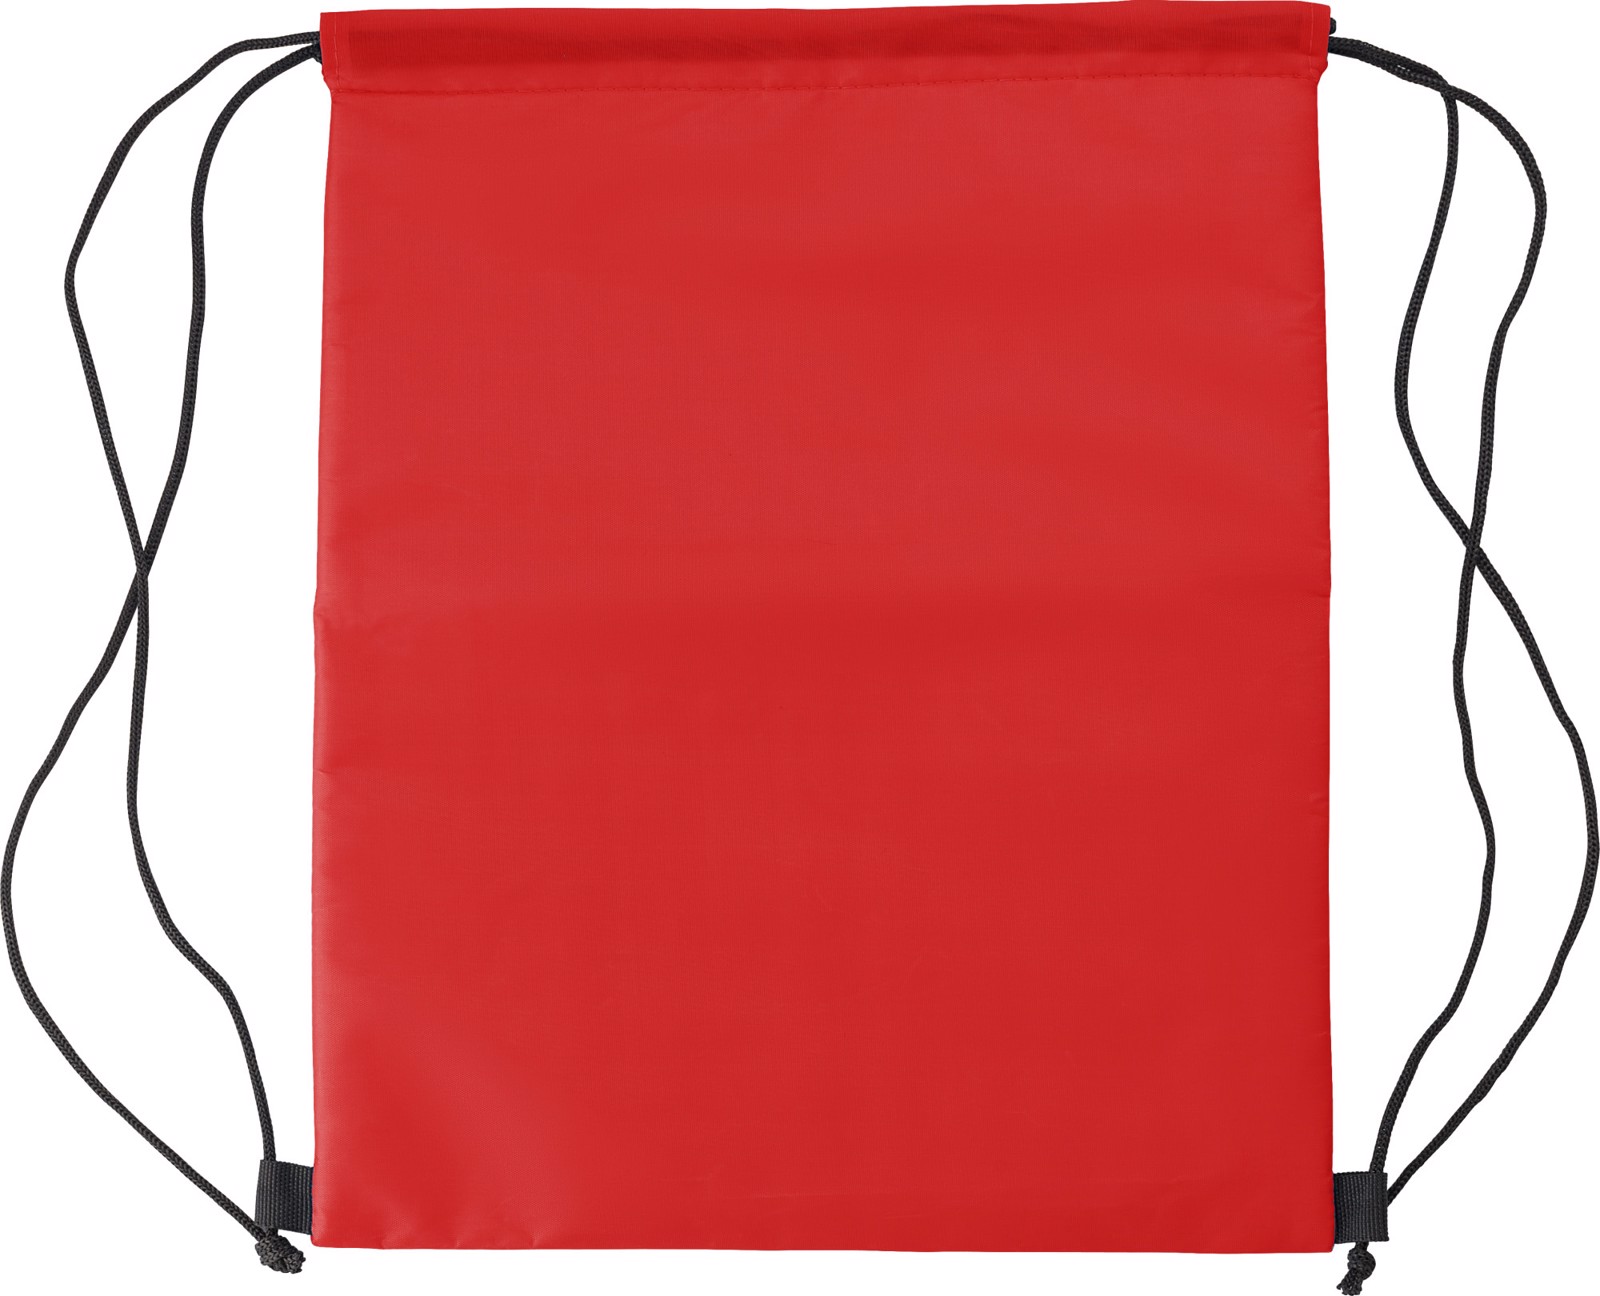 Polyester (210D) cooler bag - Red